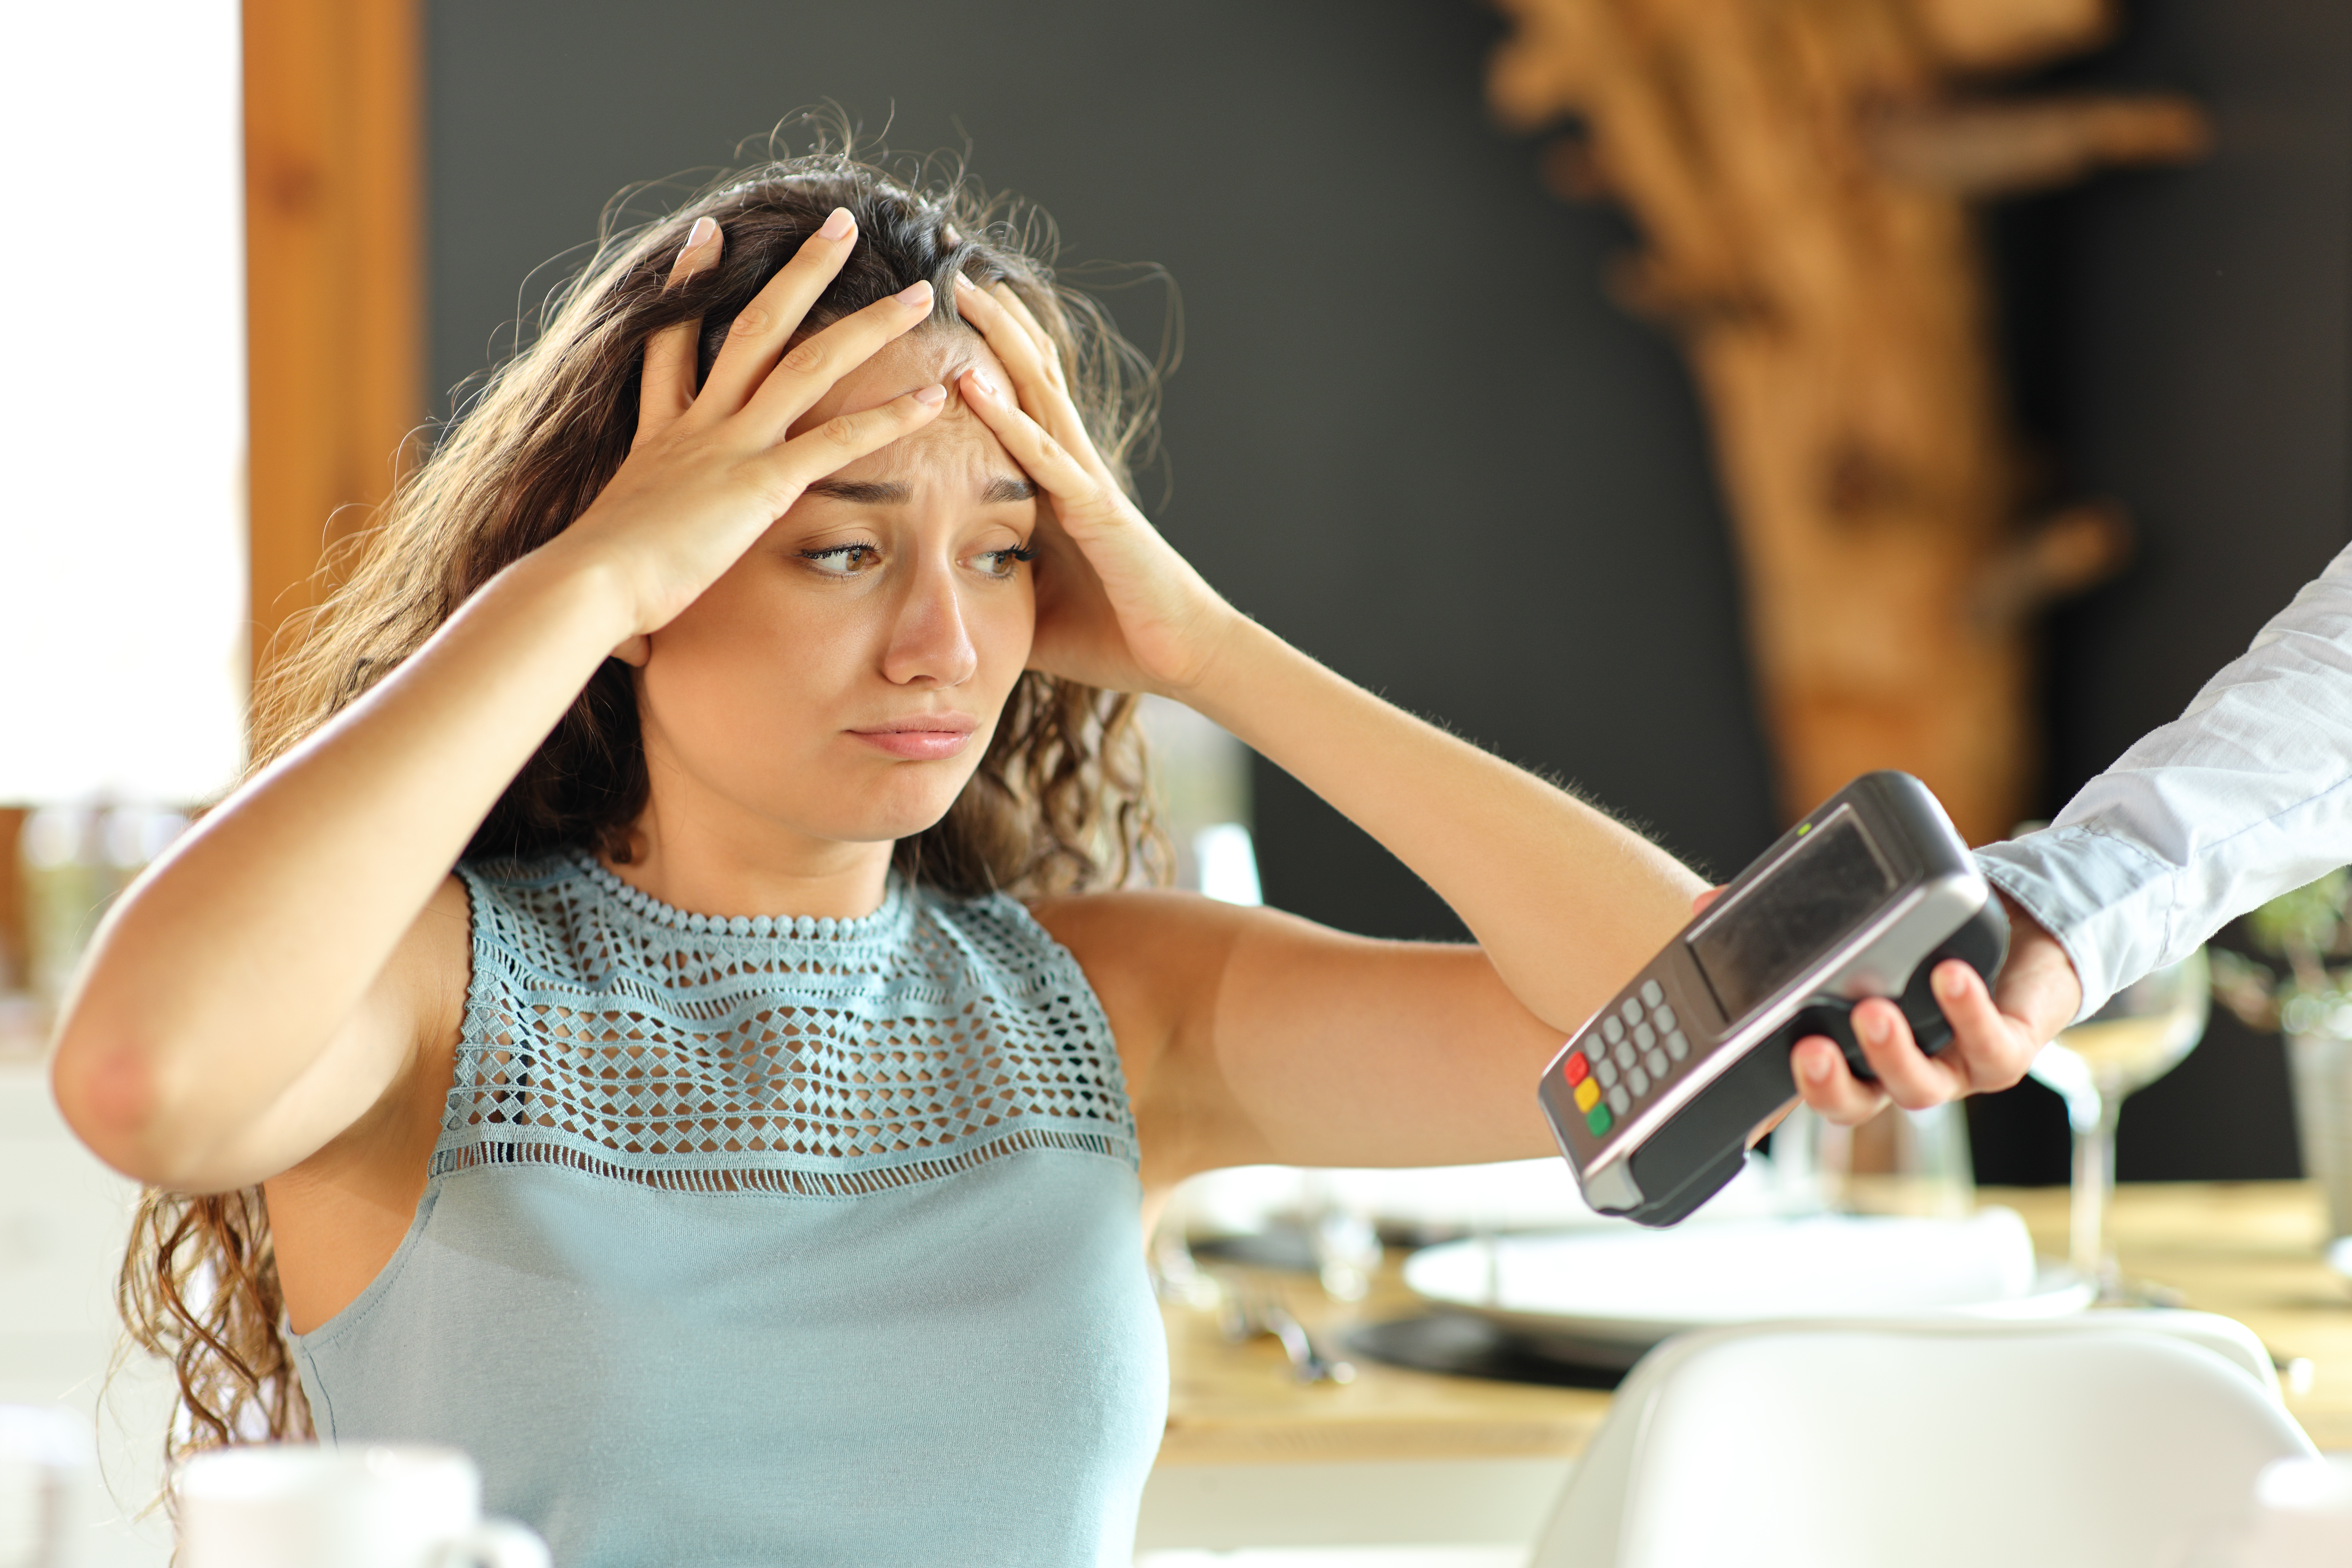 Une femme a l'air désespérée alors qu'on lui tend un distributeur de cartes de crédit. | Source : Shutterstock